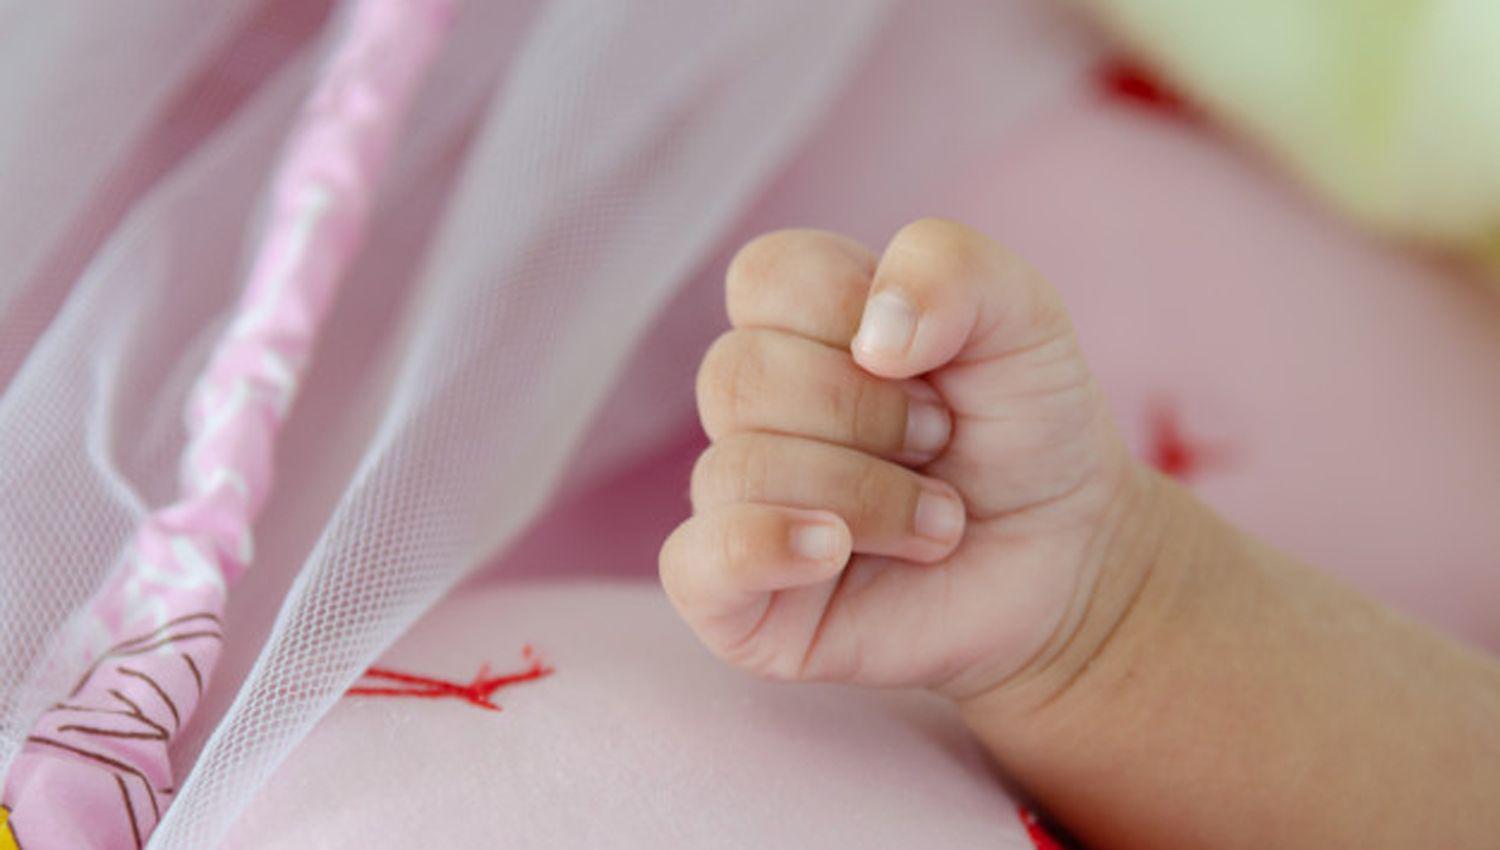 Piacutea la primera beba nacida durante esta Navidad en el hospital Regional